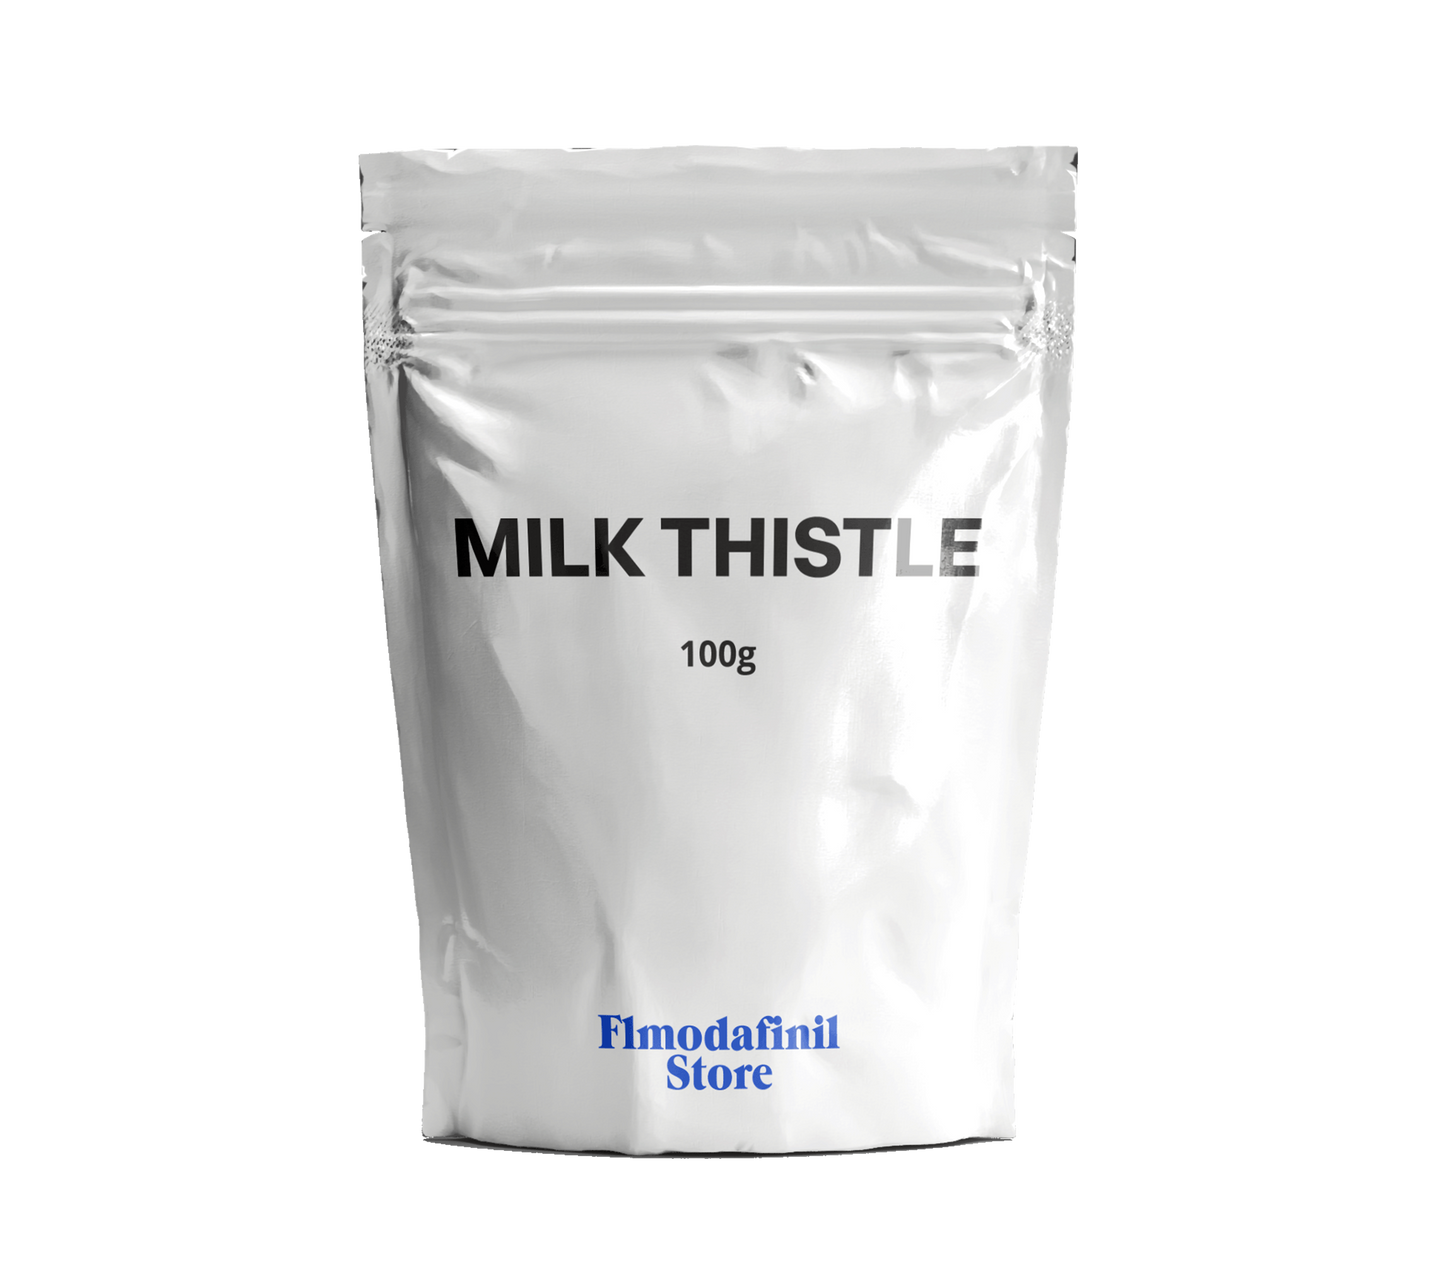 Milk Thistle Powder